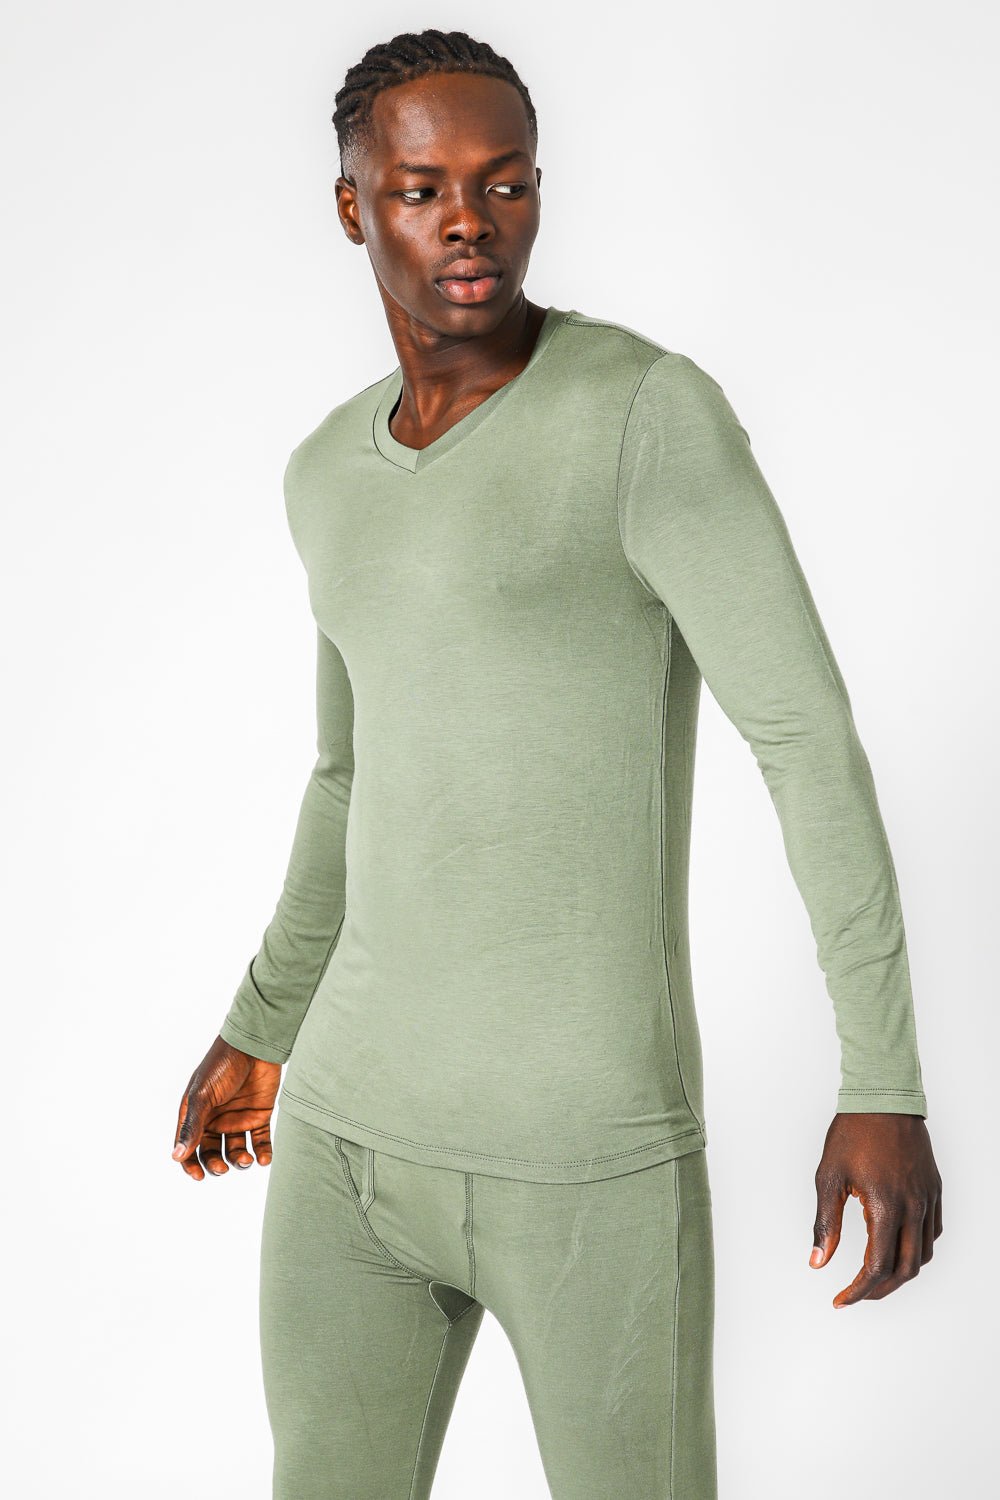 DELTA - חולצה תרמית צווארון וי - SLIM FIT בצבע ירוק - MASHBIR//365